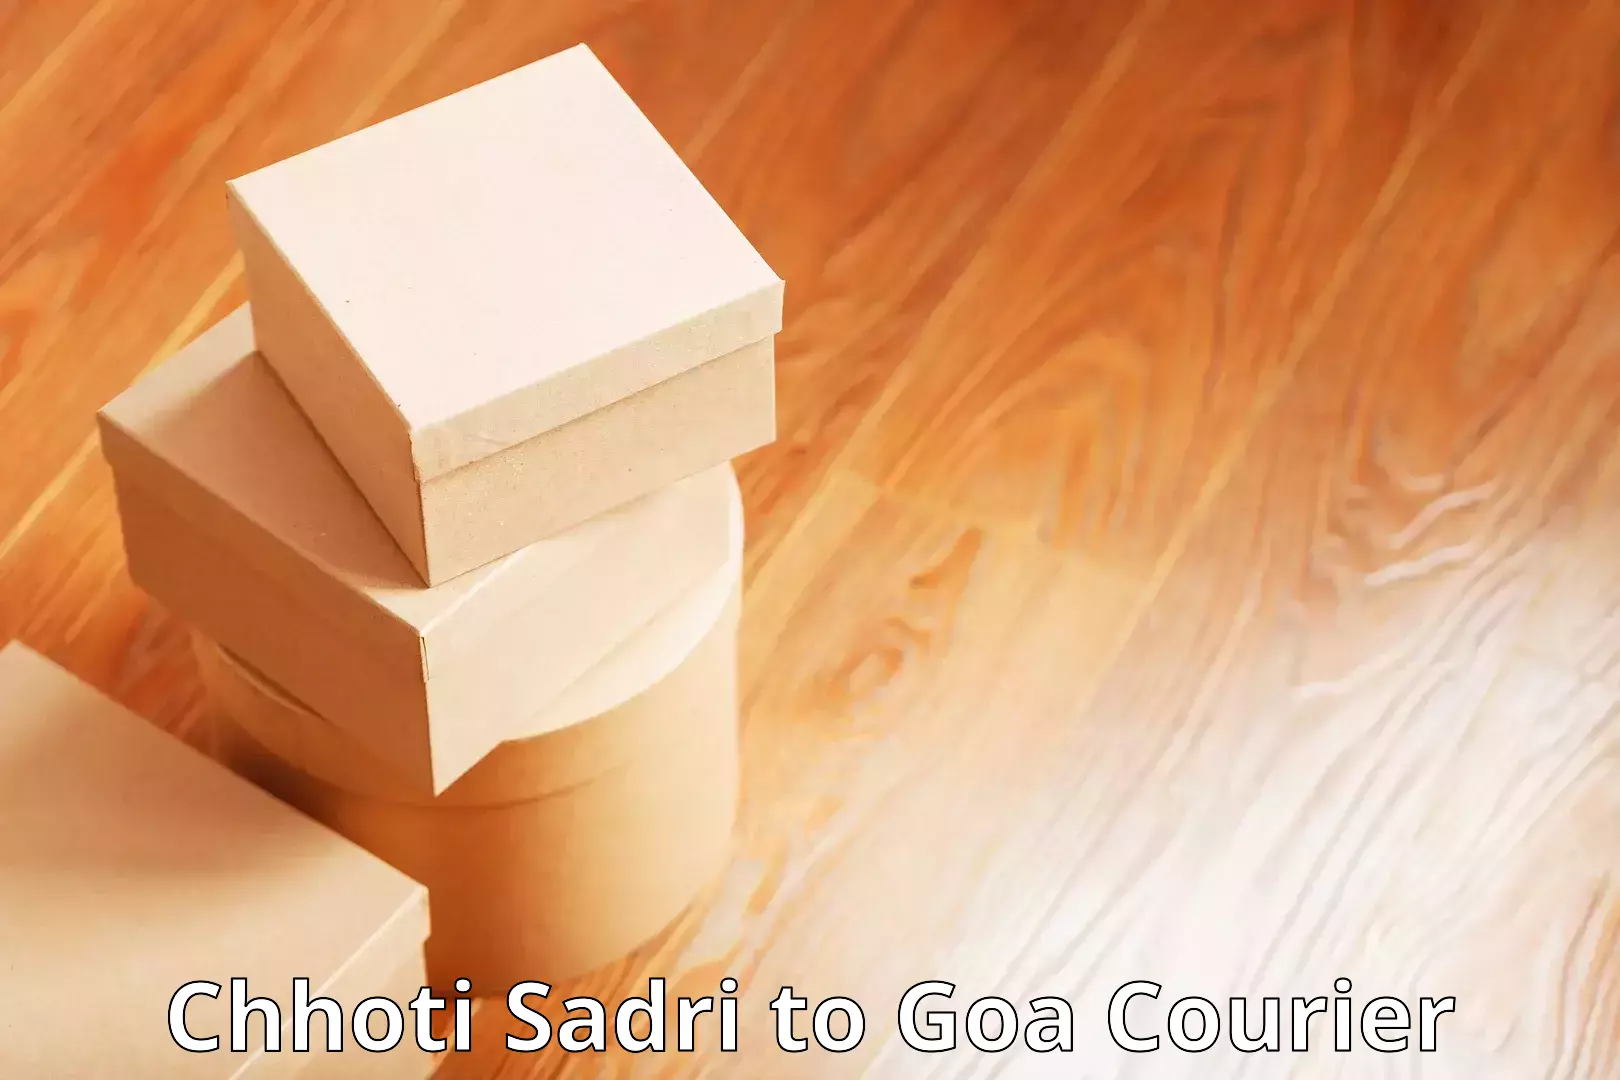 Customized shipping options Chhoti Sadri to Vasco da Gama